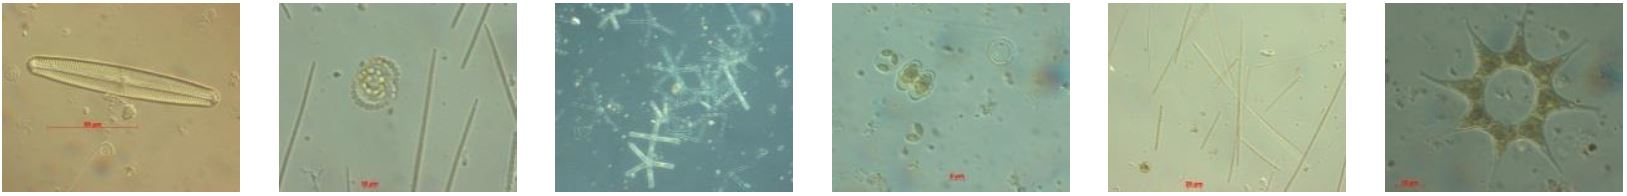 Die 6 Fotos zeigen verschiedene Formen frei im Wasser schwebender, unter dem Mikroskop erkennbarer Algen (mit Stäbchenform, nadel- und sternförmig).